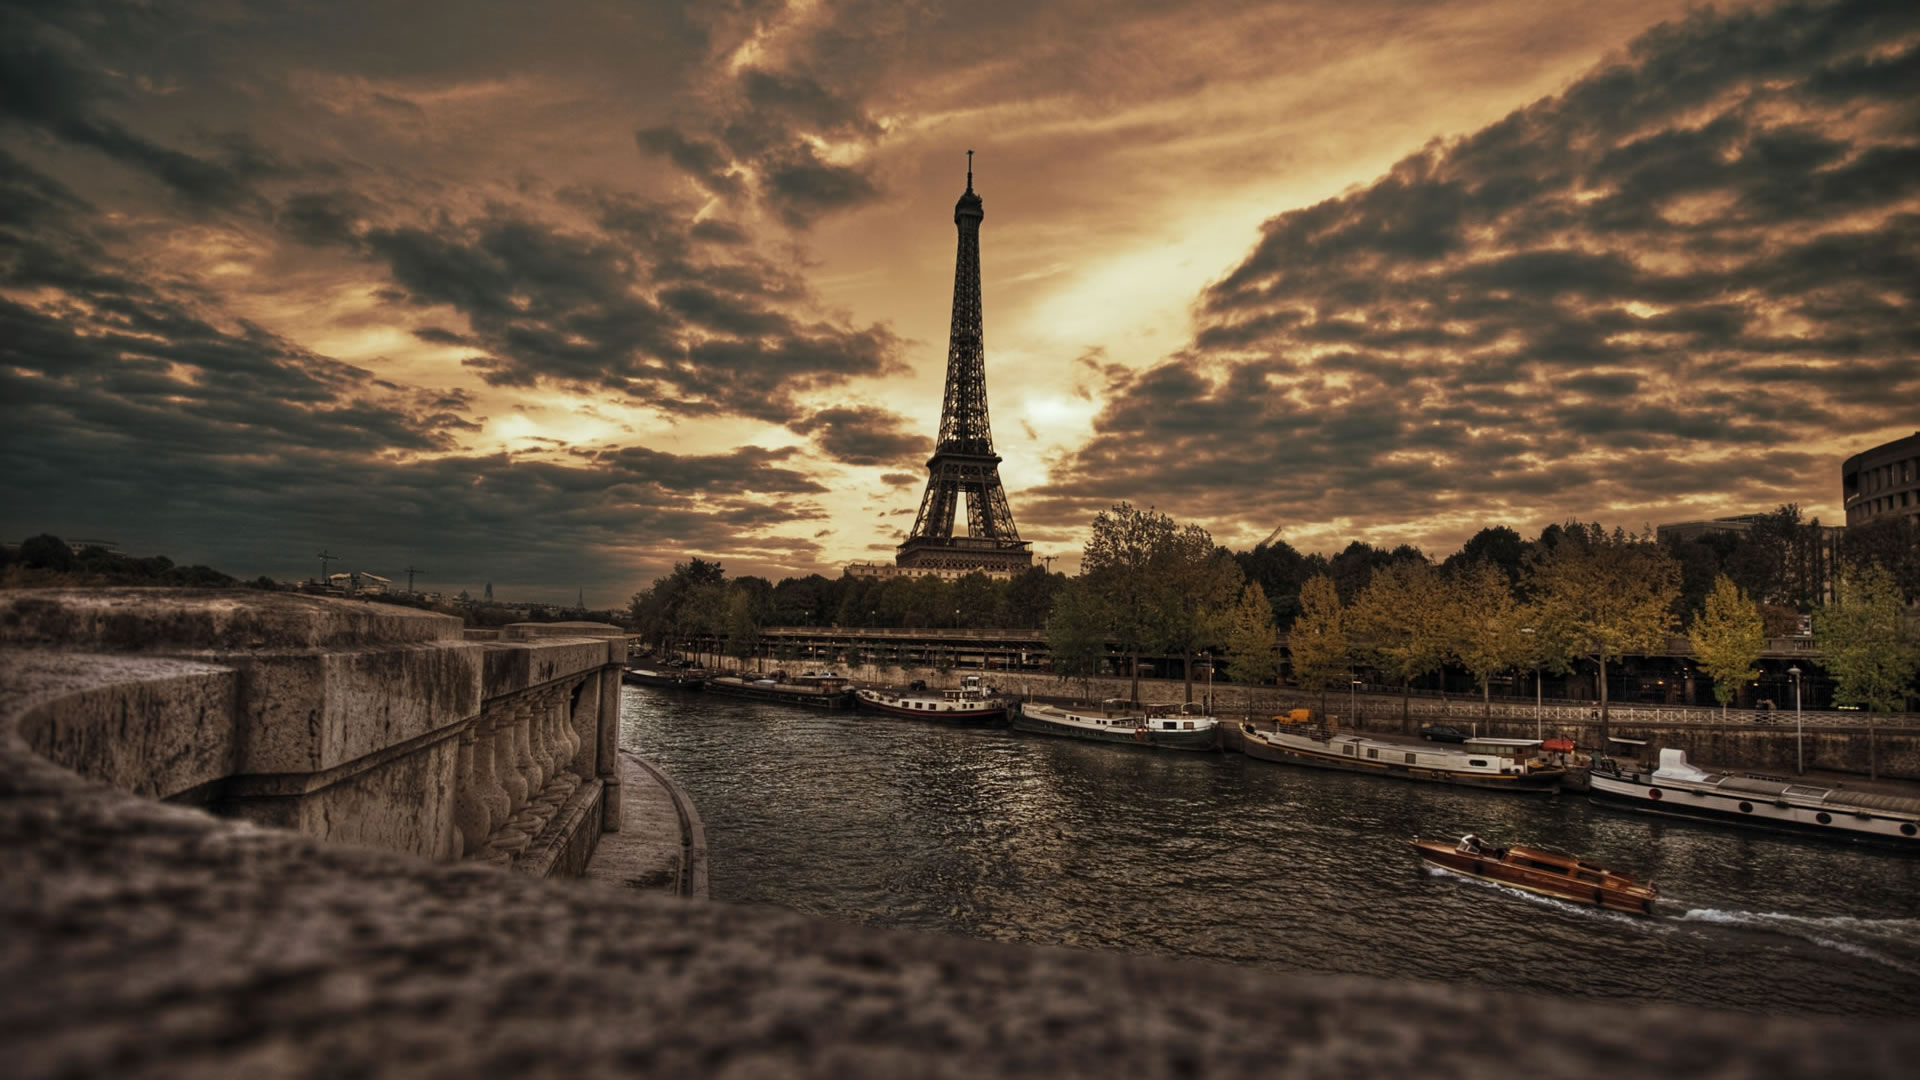 Fond d'ecran Tour Eiffel et la Seine